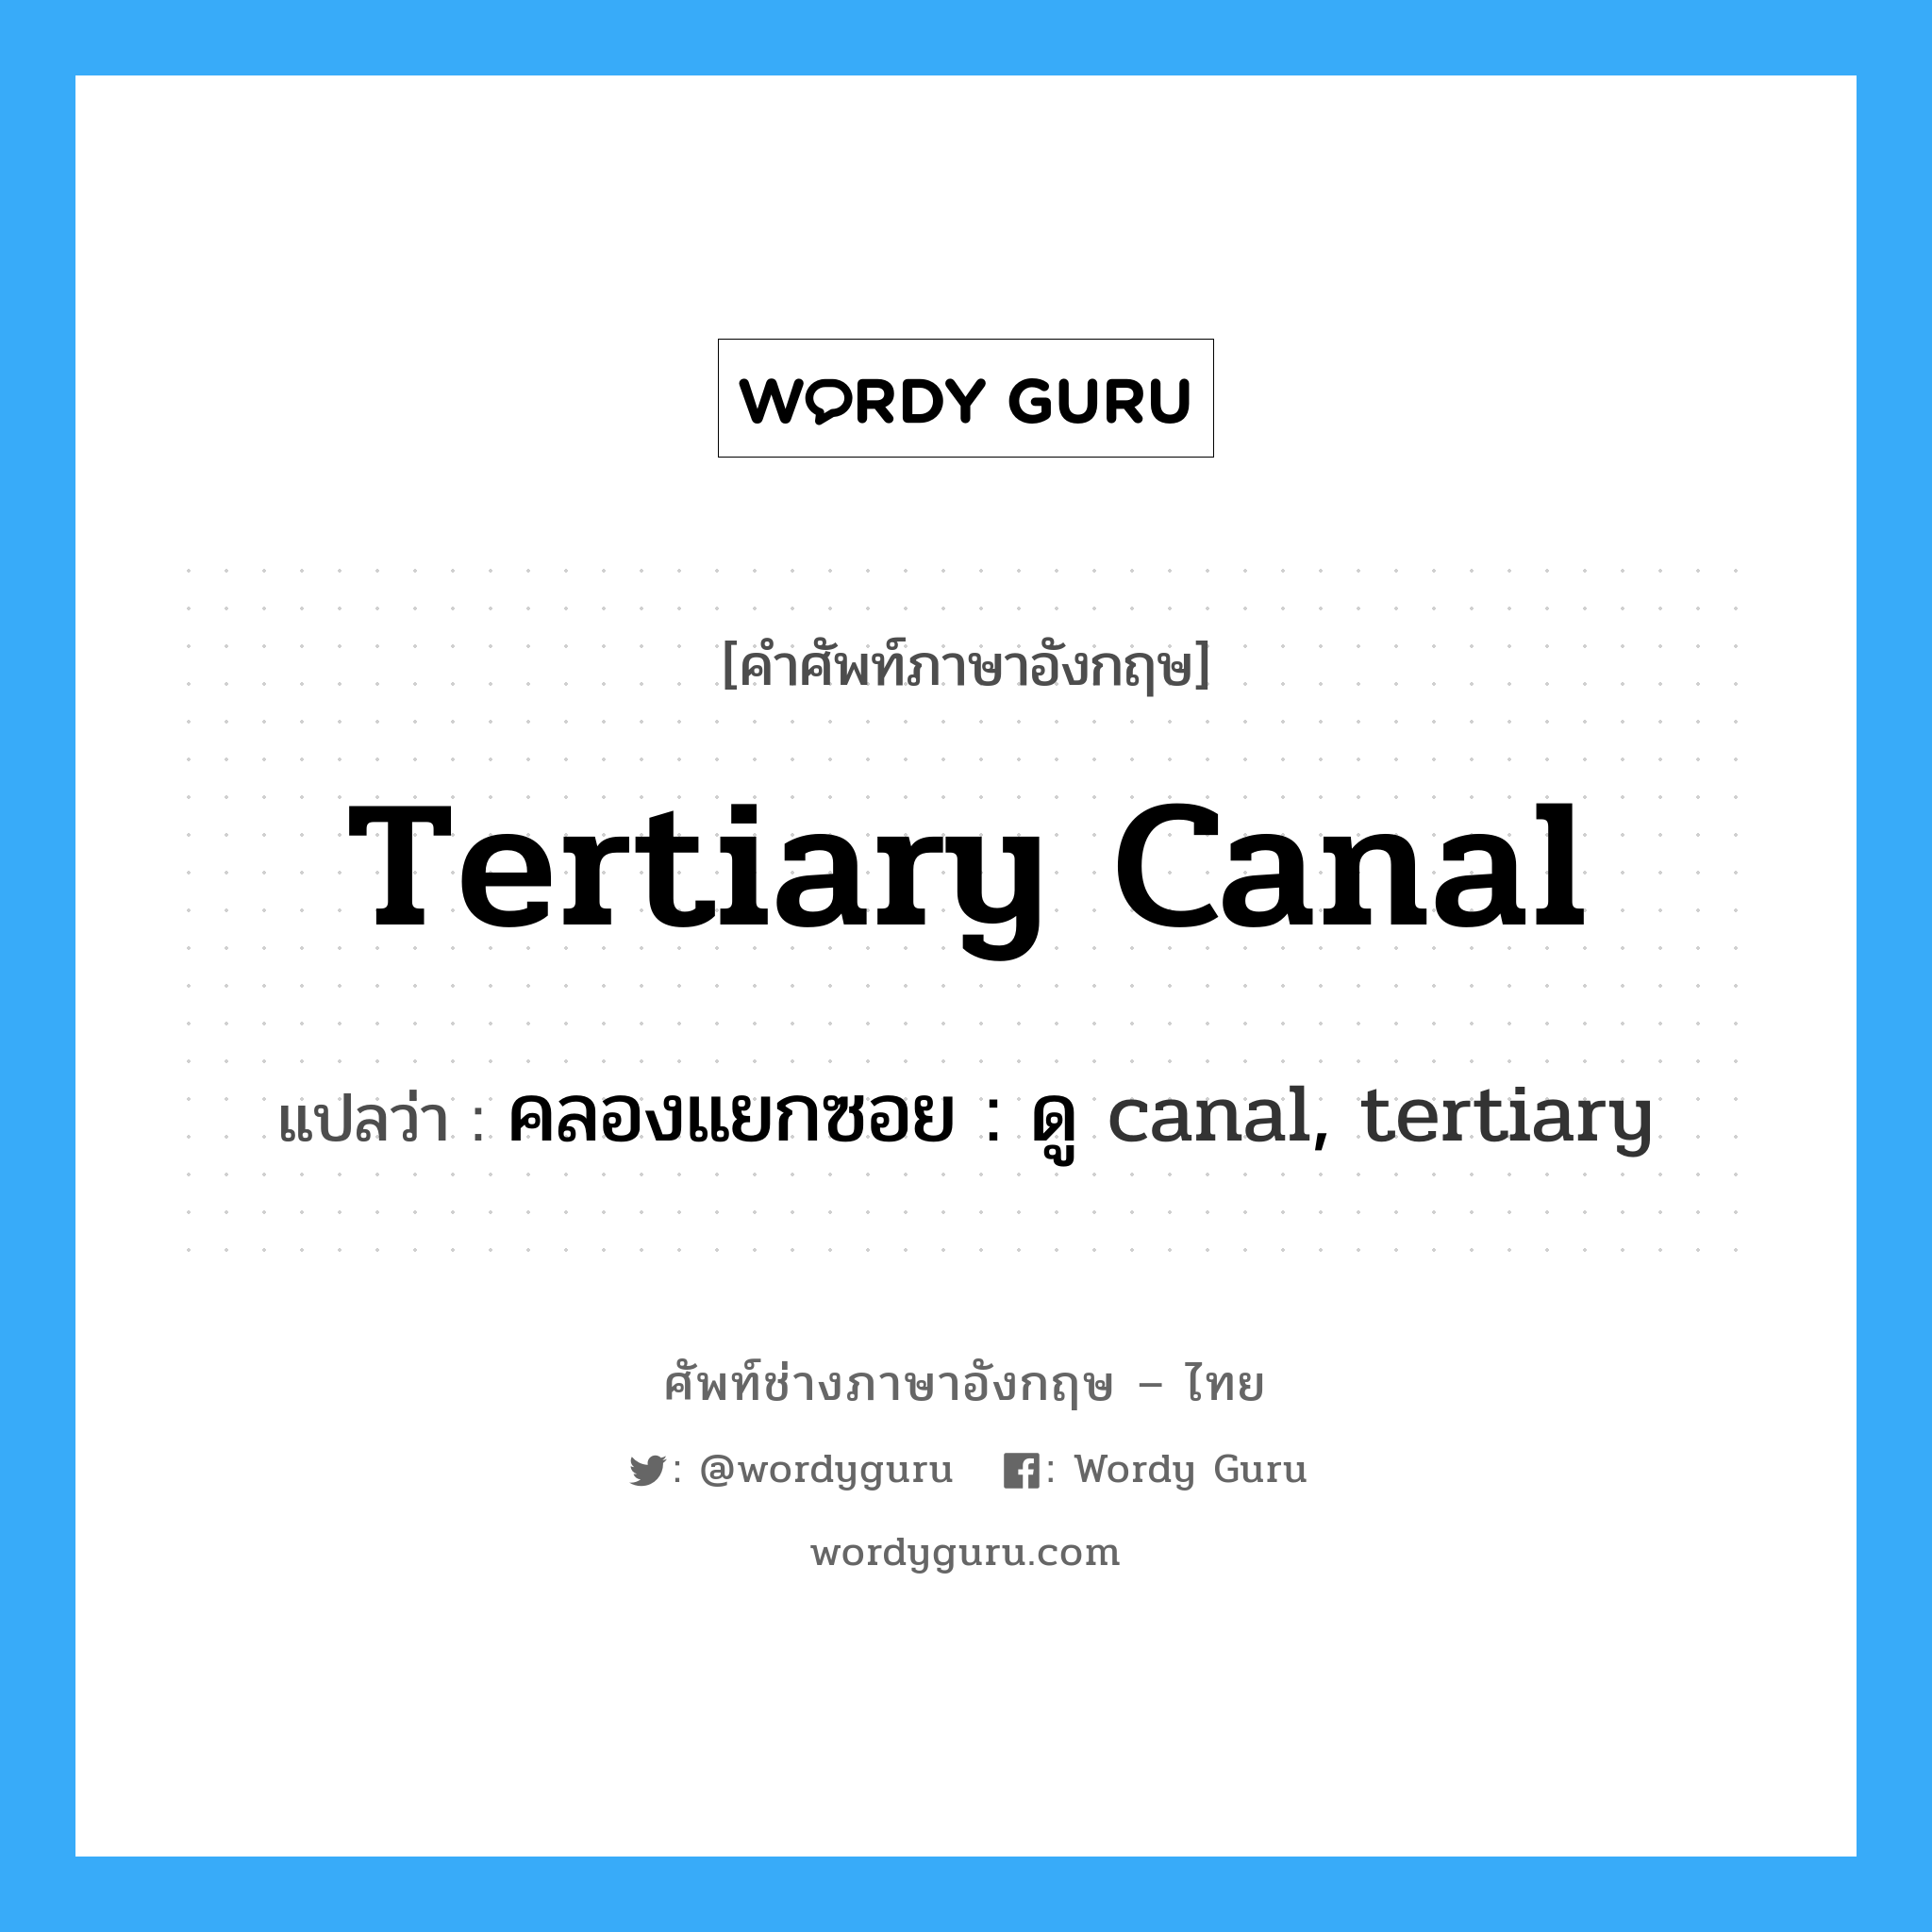 คลองแยกซอย : ดู canal, tertiary ภาษาอังกฤษ?, คำศัพท์ช่างภาษาอังกฤษ - ไทย คลองแยกซอย : ดู canal, tertiary คำศัพท์ภาษาอังกฤษ คลองแยกซอย : ดู canal, tertiary แปลว่า tertiary canal